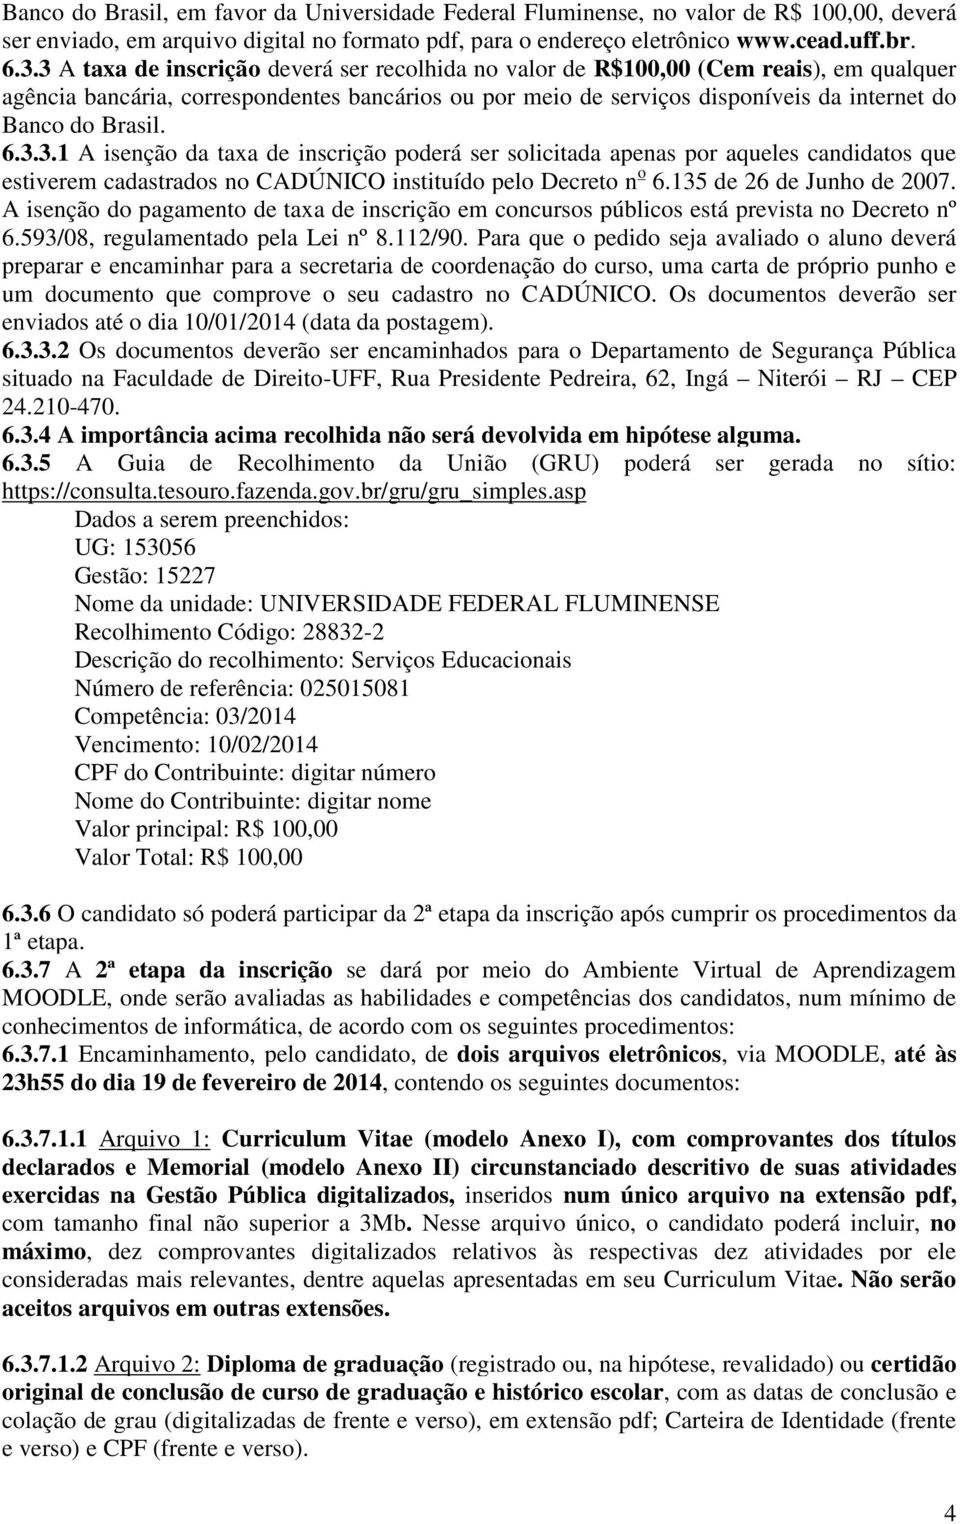 6.3.3.1 A isenção da taxa de inscrição poderá ser solicitada apenas por aqueles candidatos que estiverem cadastrados no CADÚNICO instituído pelo Decreto n o 6.135 de 26 de Junho de 2007.